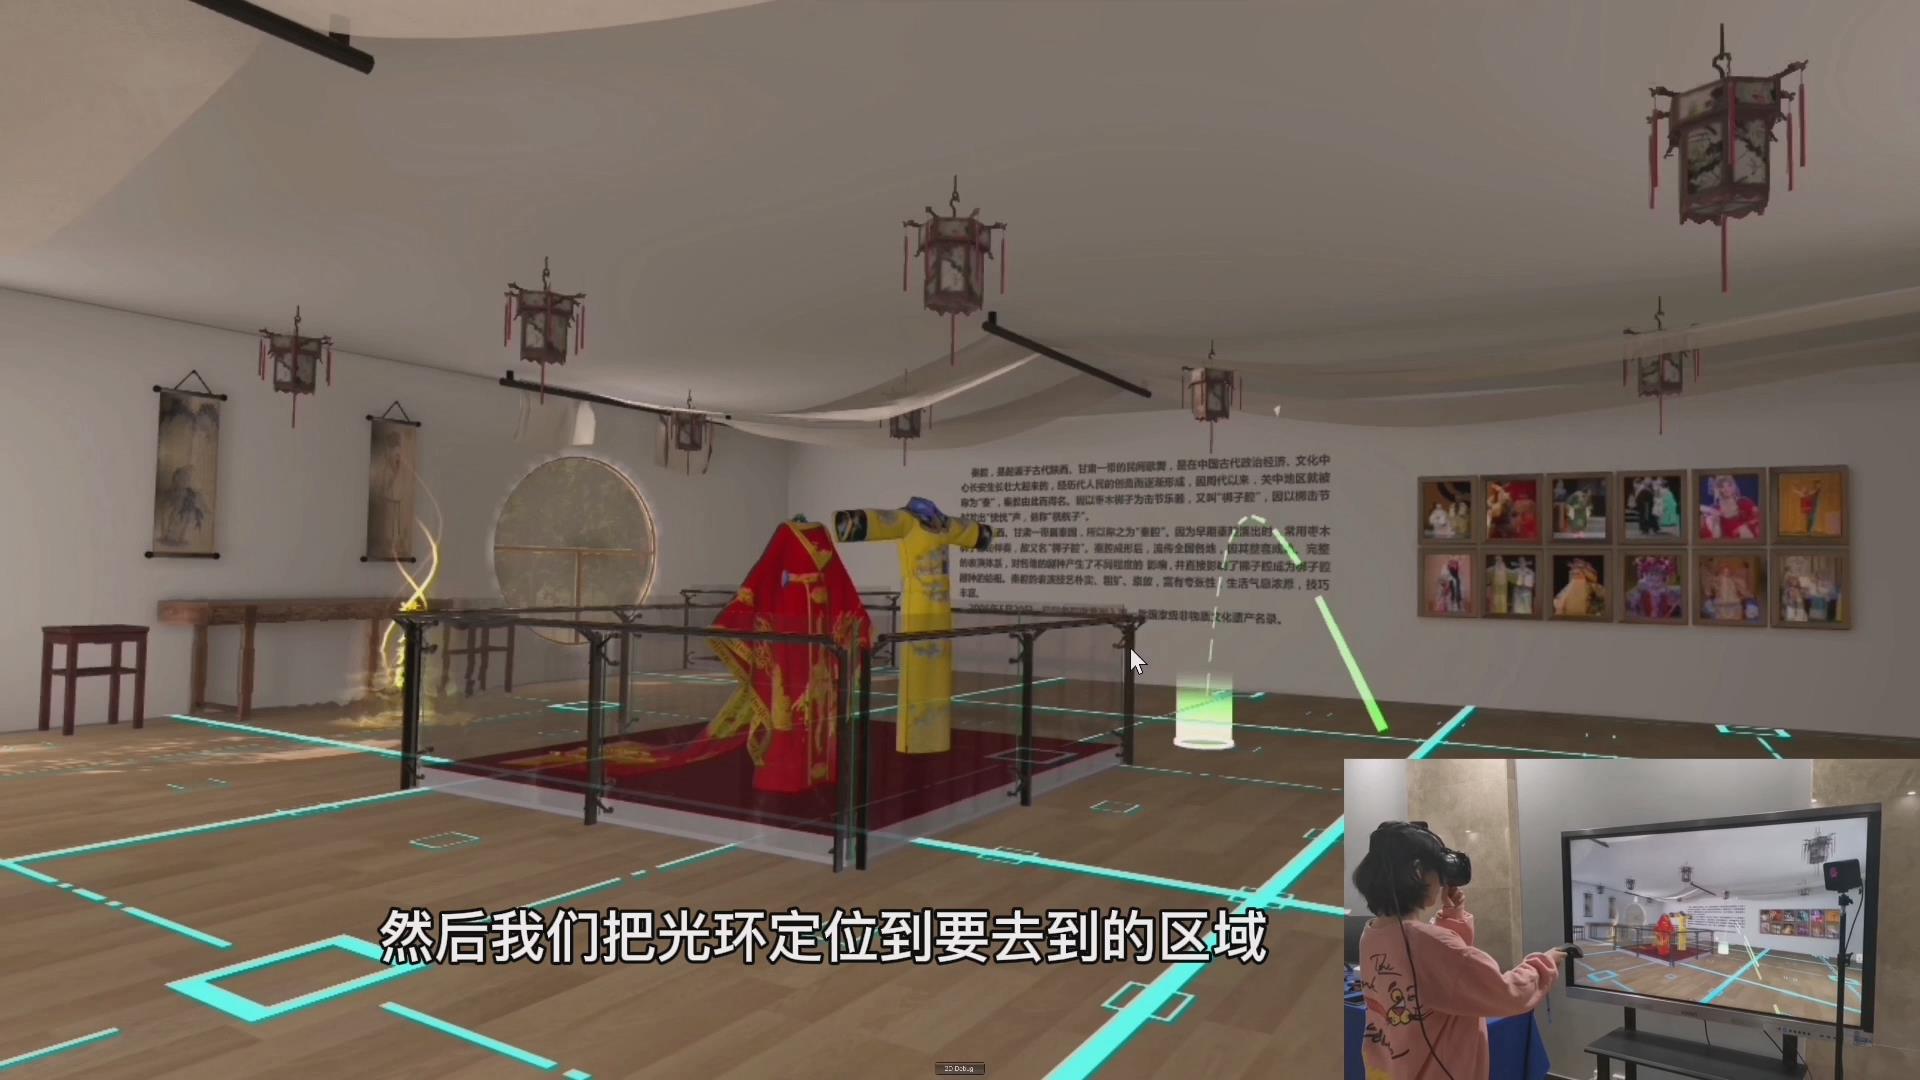 虚拟现实与游戏竞赛作品——云传秦韵——基于VR的秦腔文化“元宇宙”智能体感平台